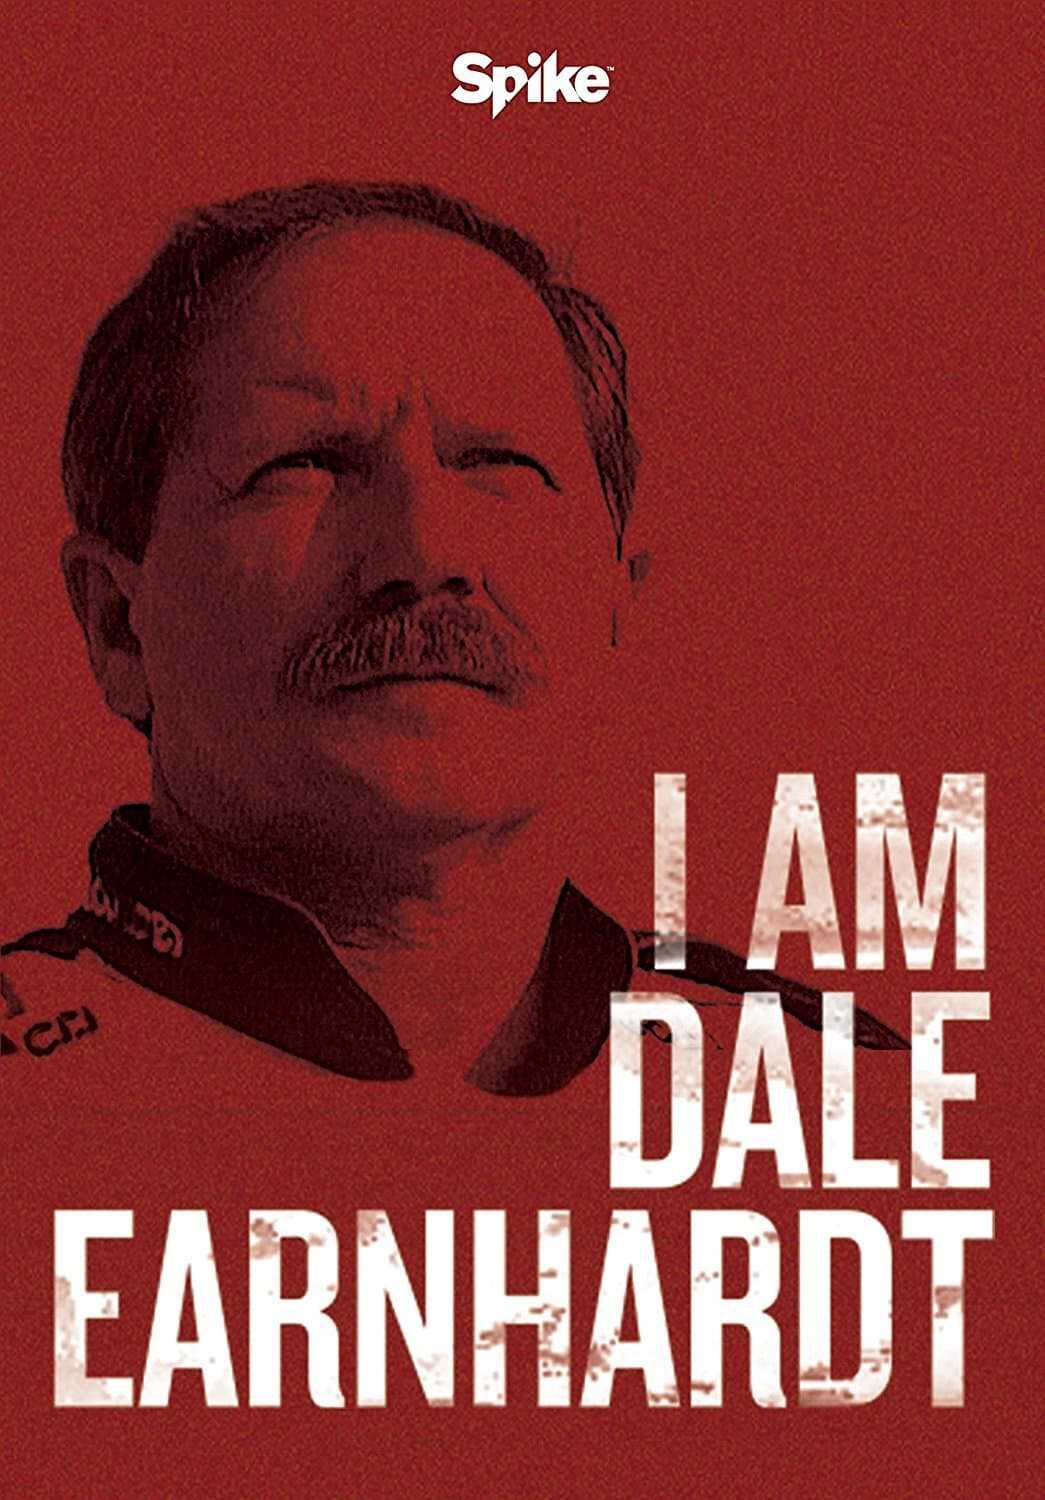 Tôi là dale earnhardt - I am dale earnhardt